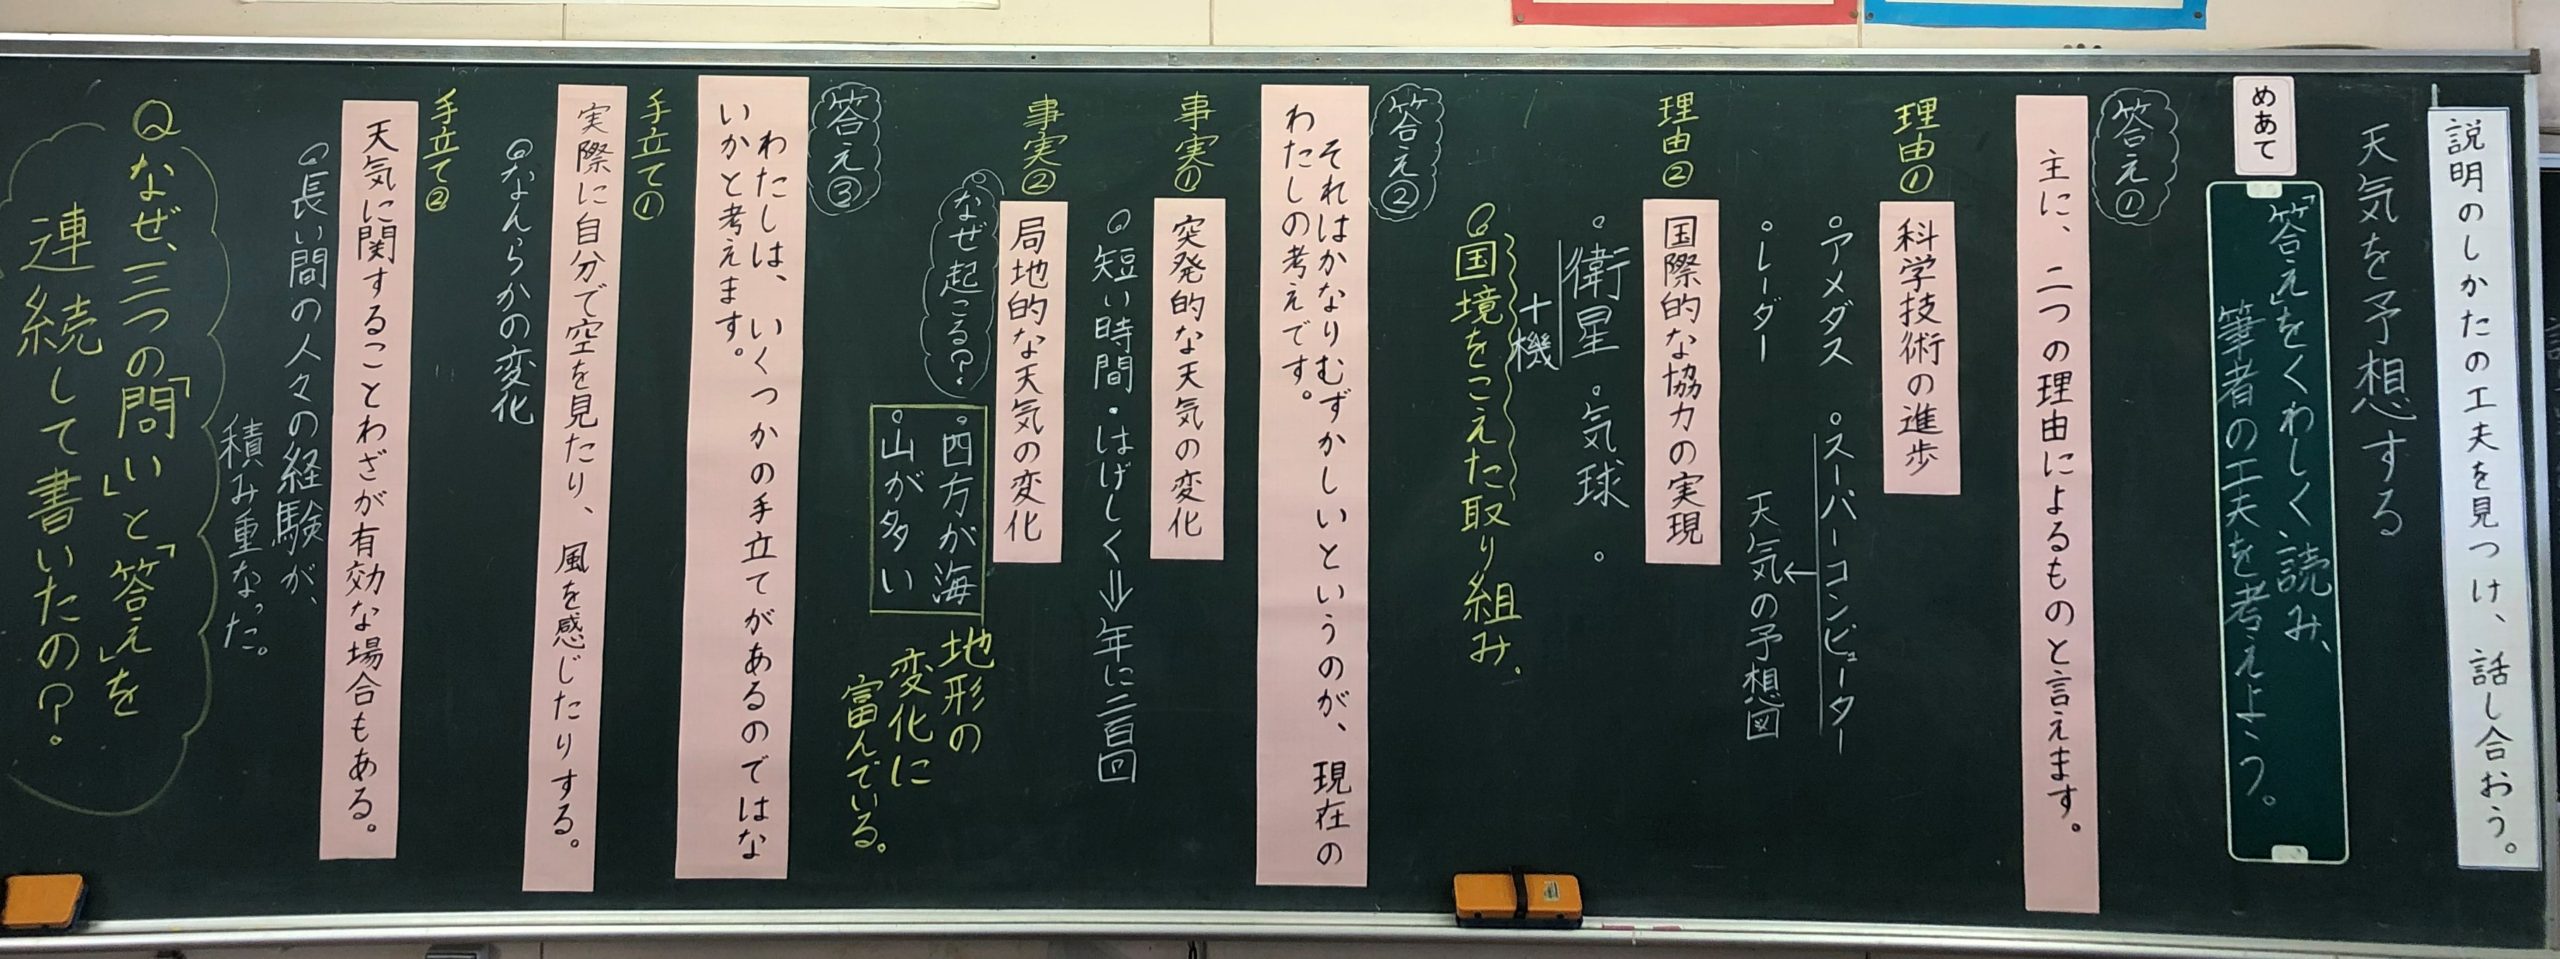 5年生国語 天気を予想する 黒板log